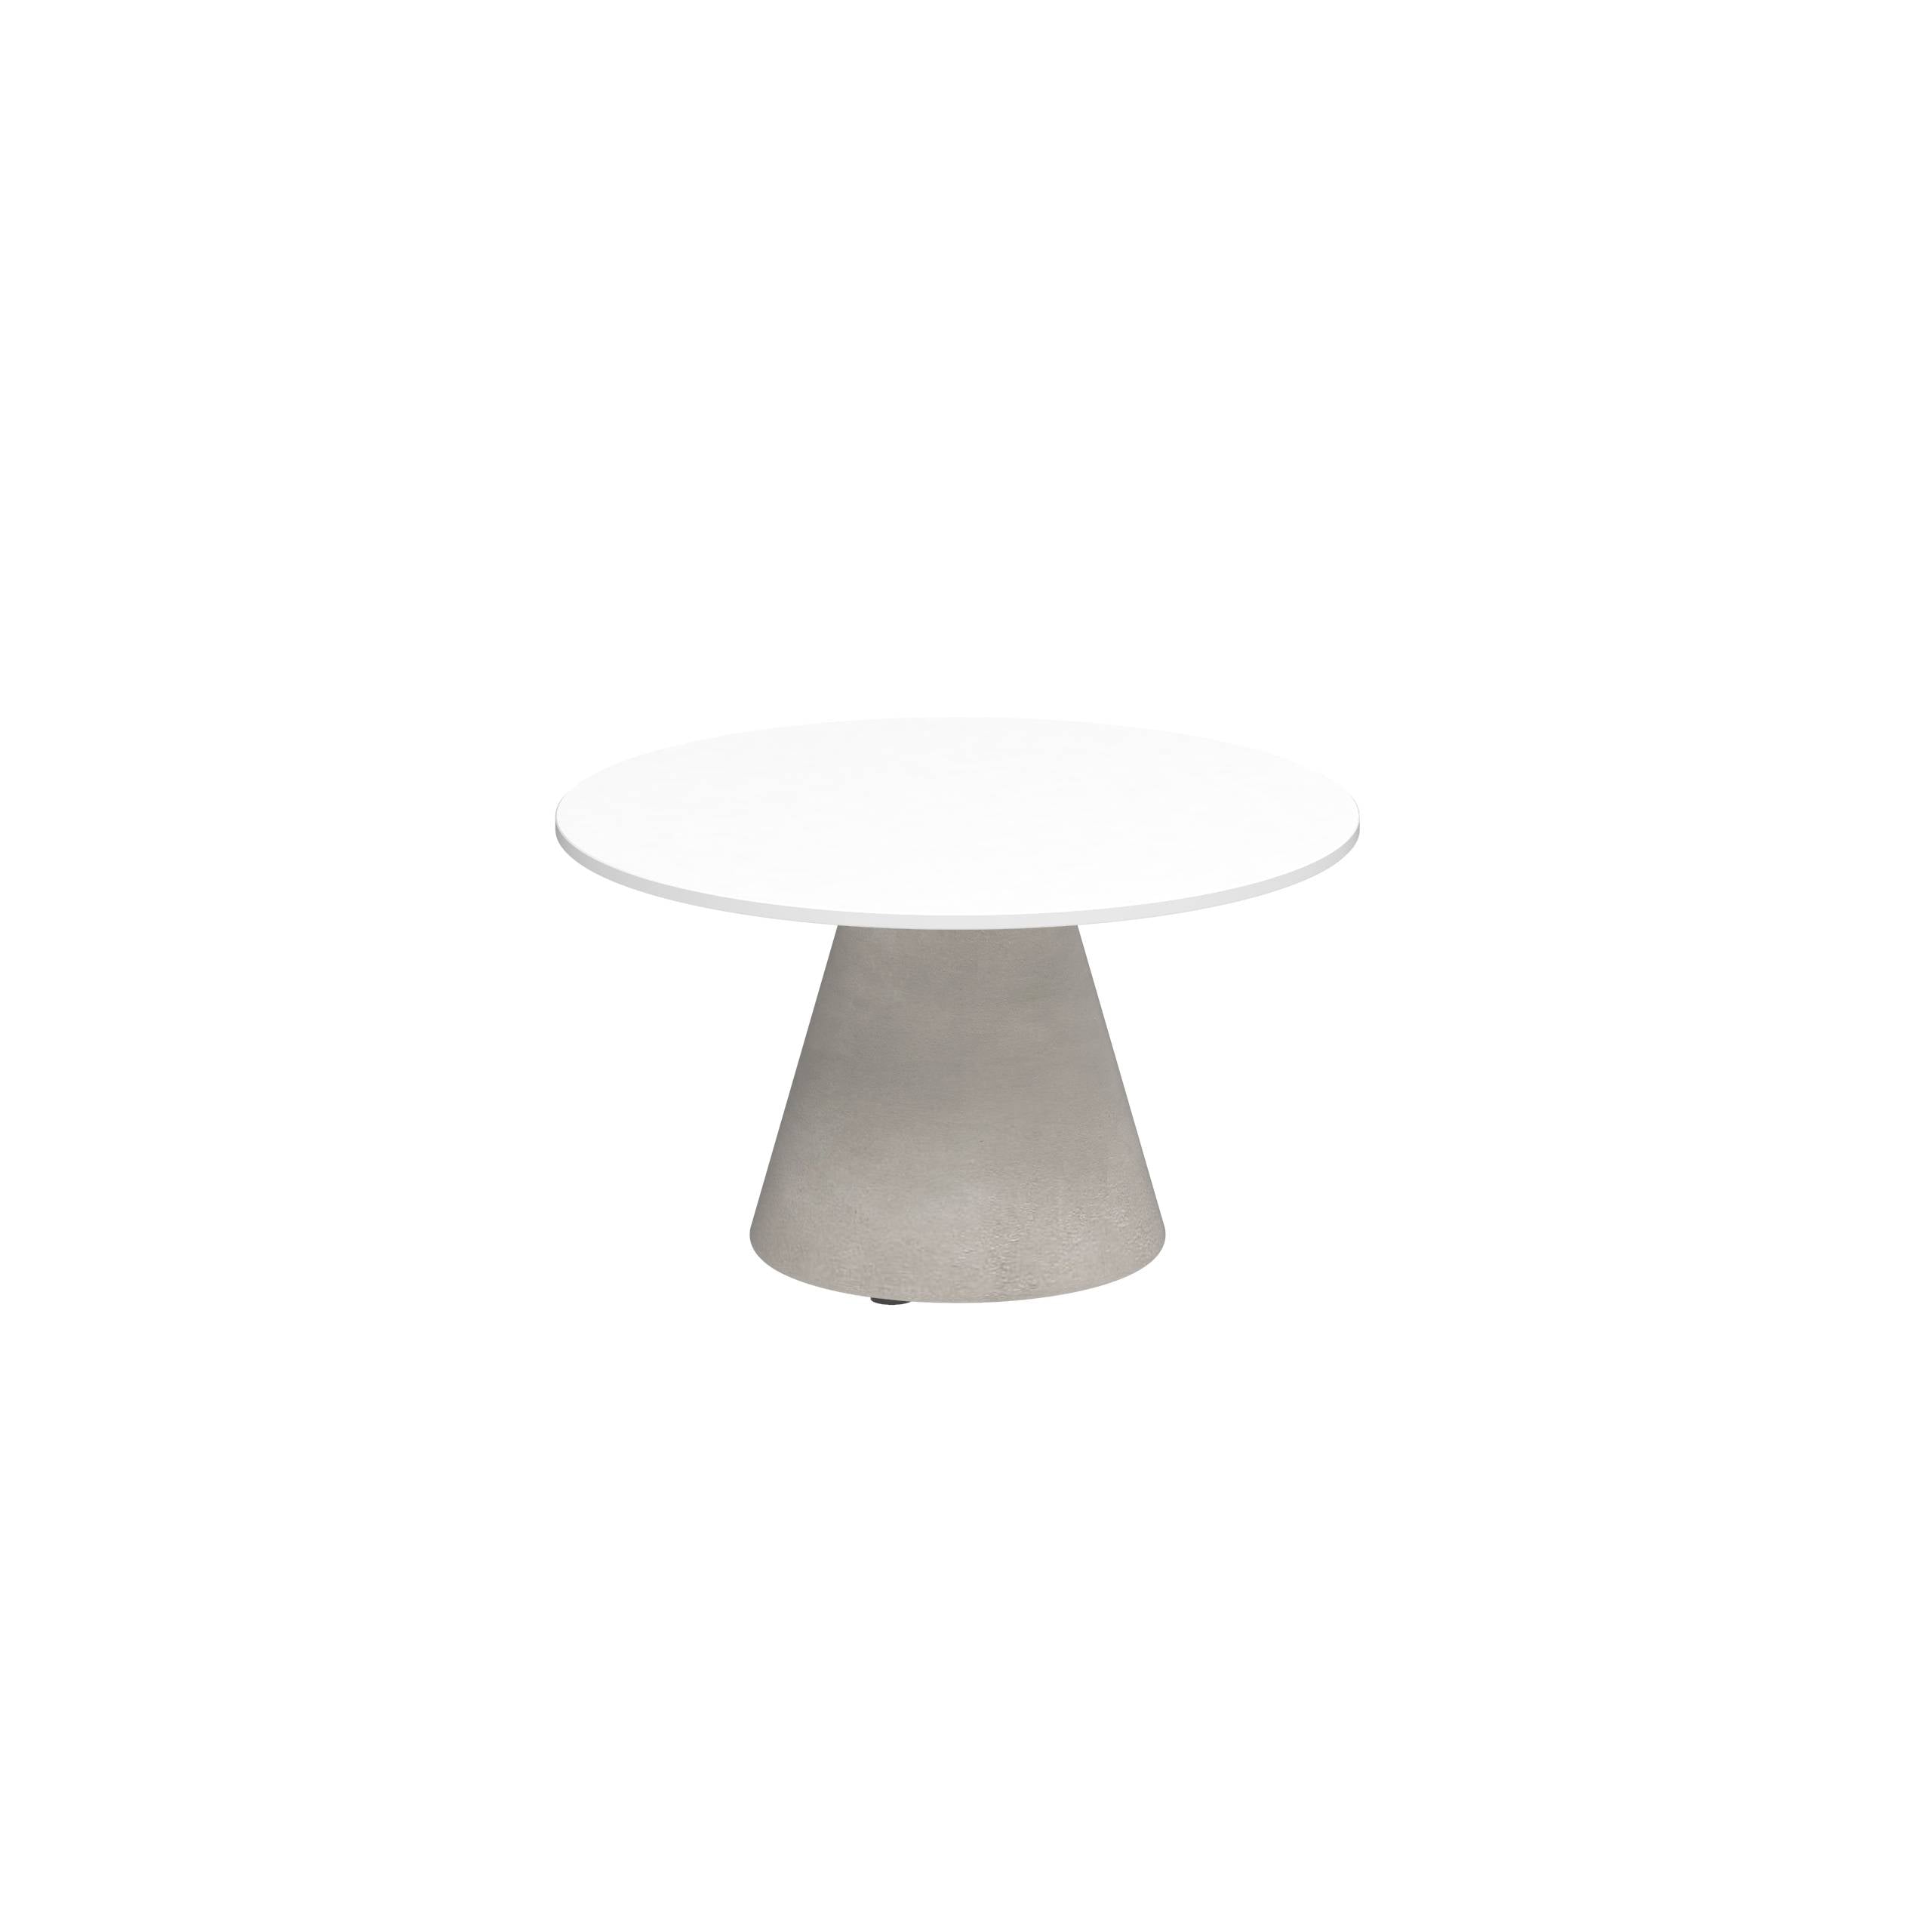 Conix Side Table Ø60cm Leg Concrete Cement Grey - Table Top Ceramic White